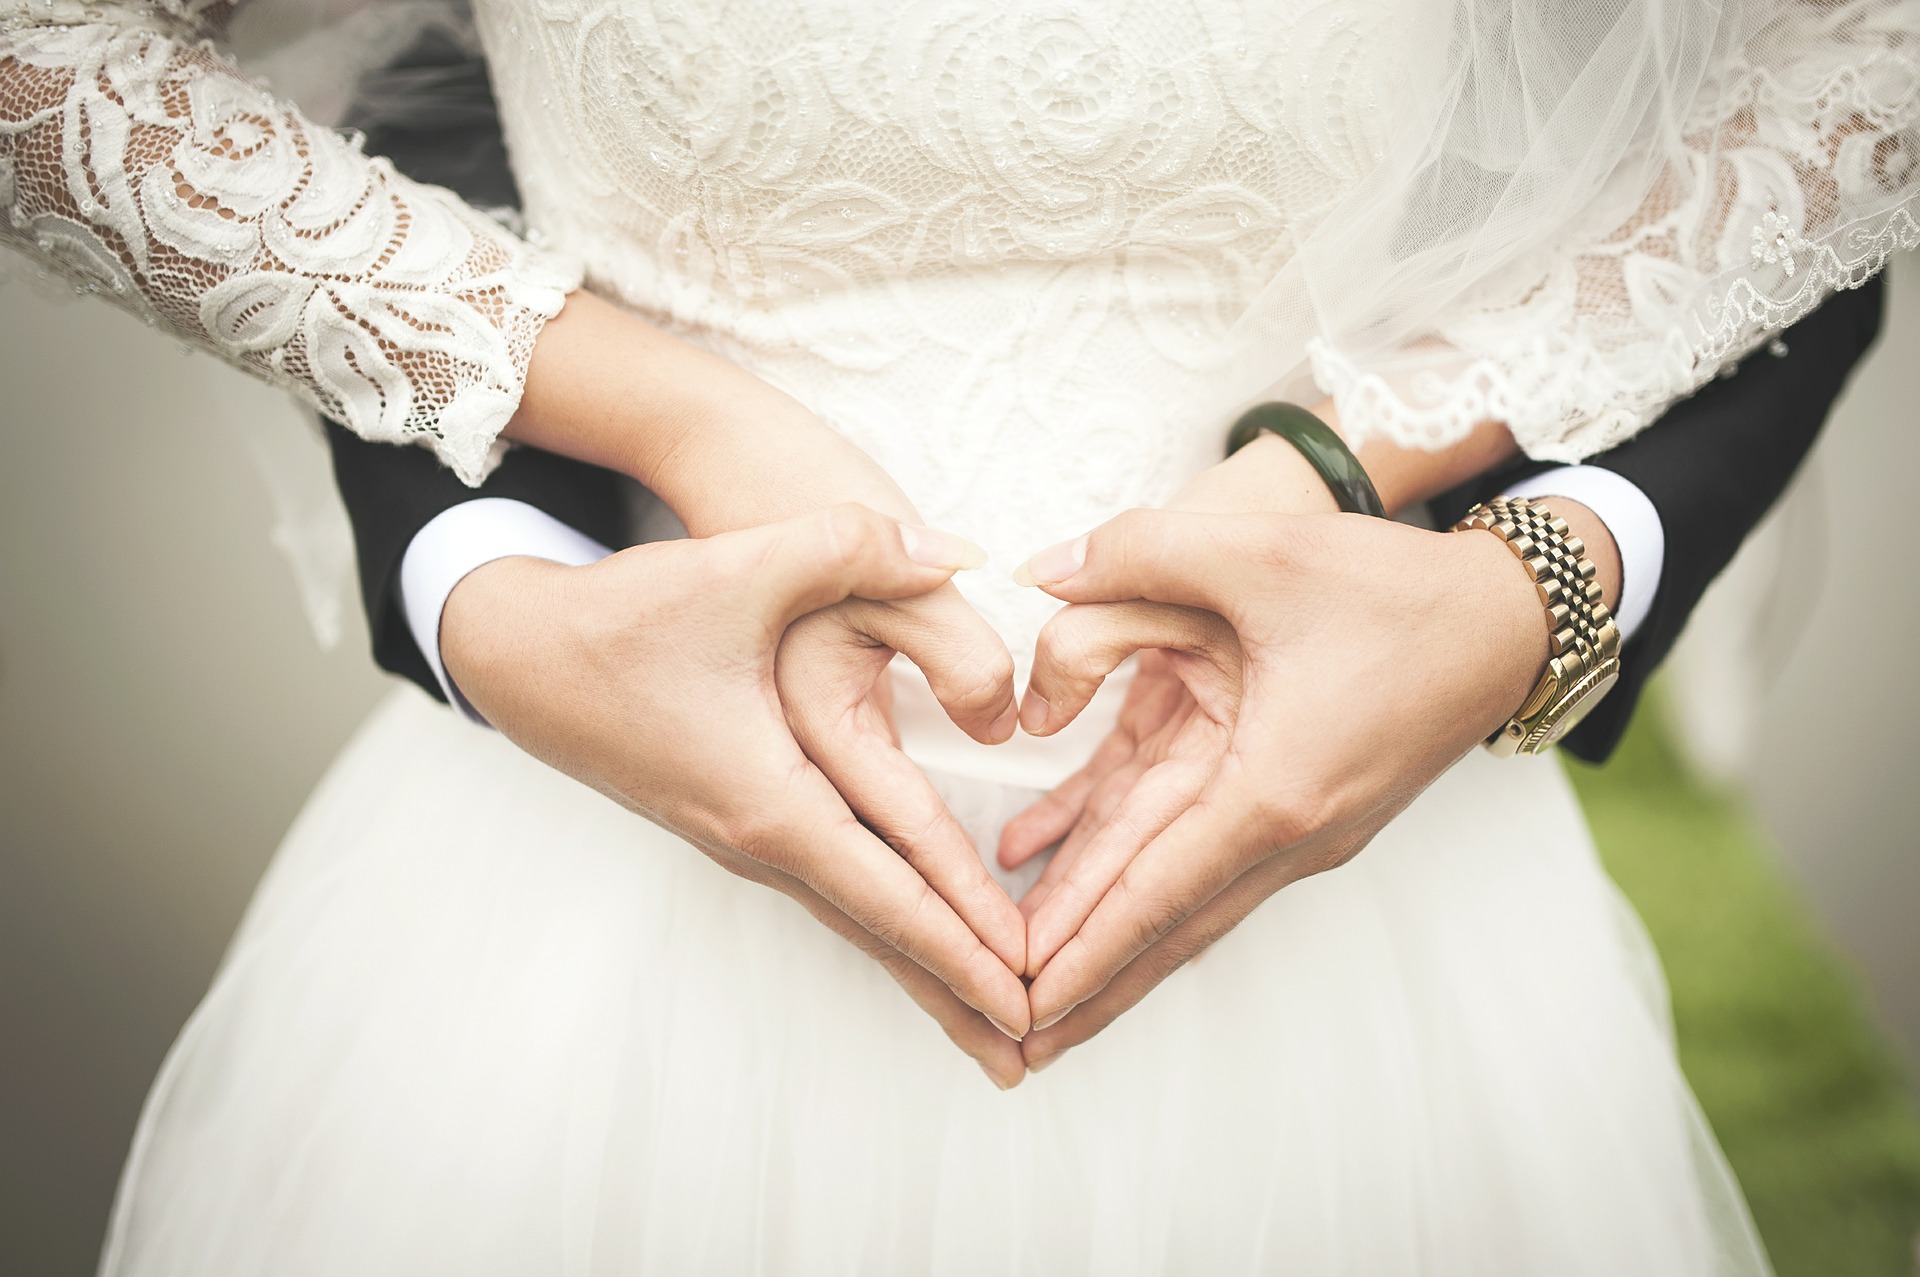 Checkliste Hochzeit – Die wichtigsten Punkte bei der Planung einer Hochzeit